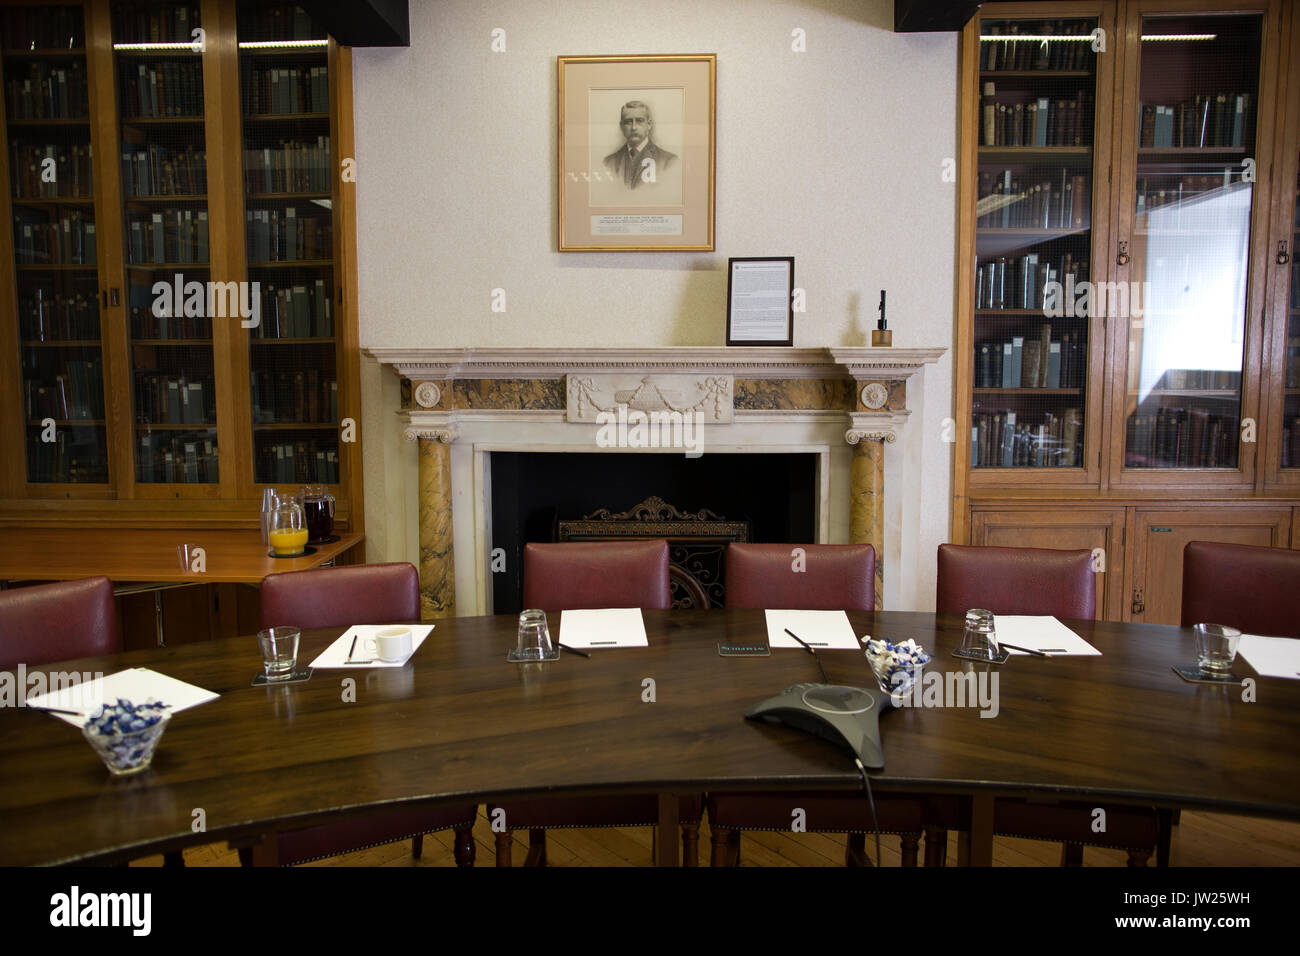 Der Marcus Beck Bibliothek, historische ehemalige Forschung Labor für das Medical Research Council, zurückgehend bis 1912, London, England, Großbritannien Stockfoto